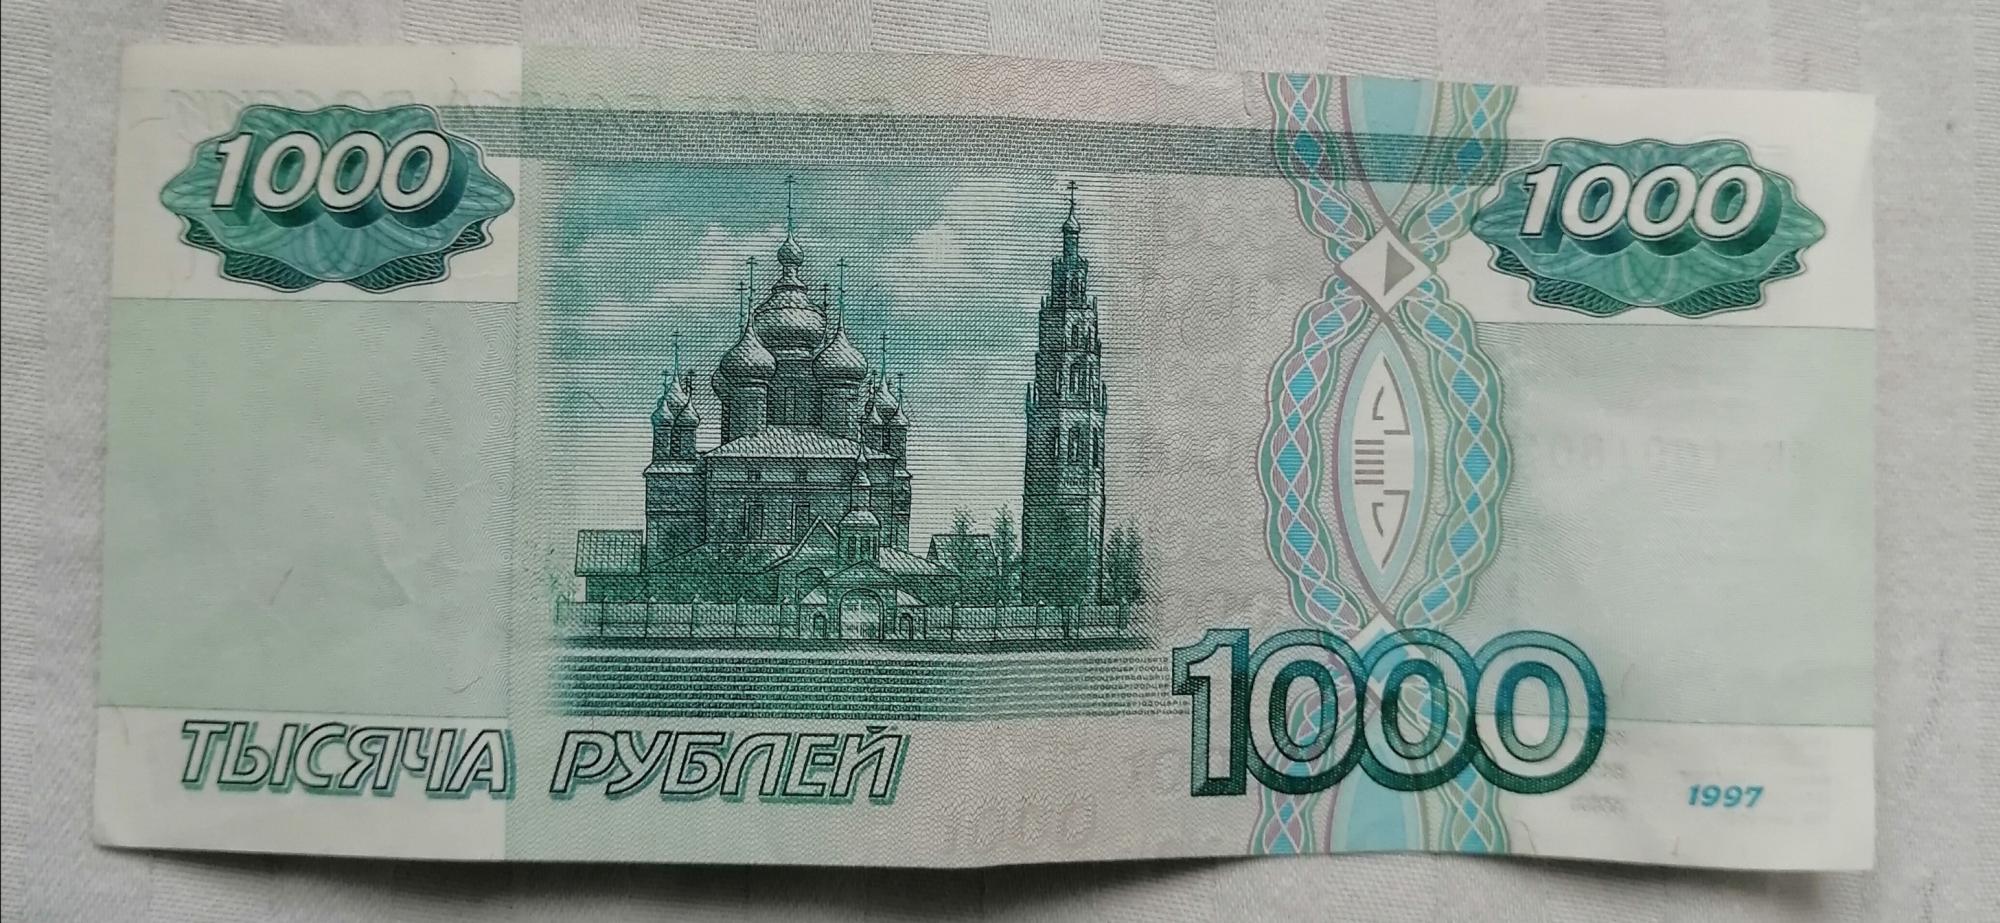 тысяча рублей фото высокого разрешения